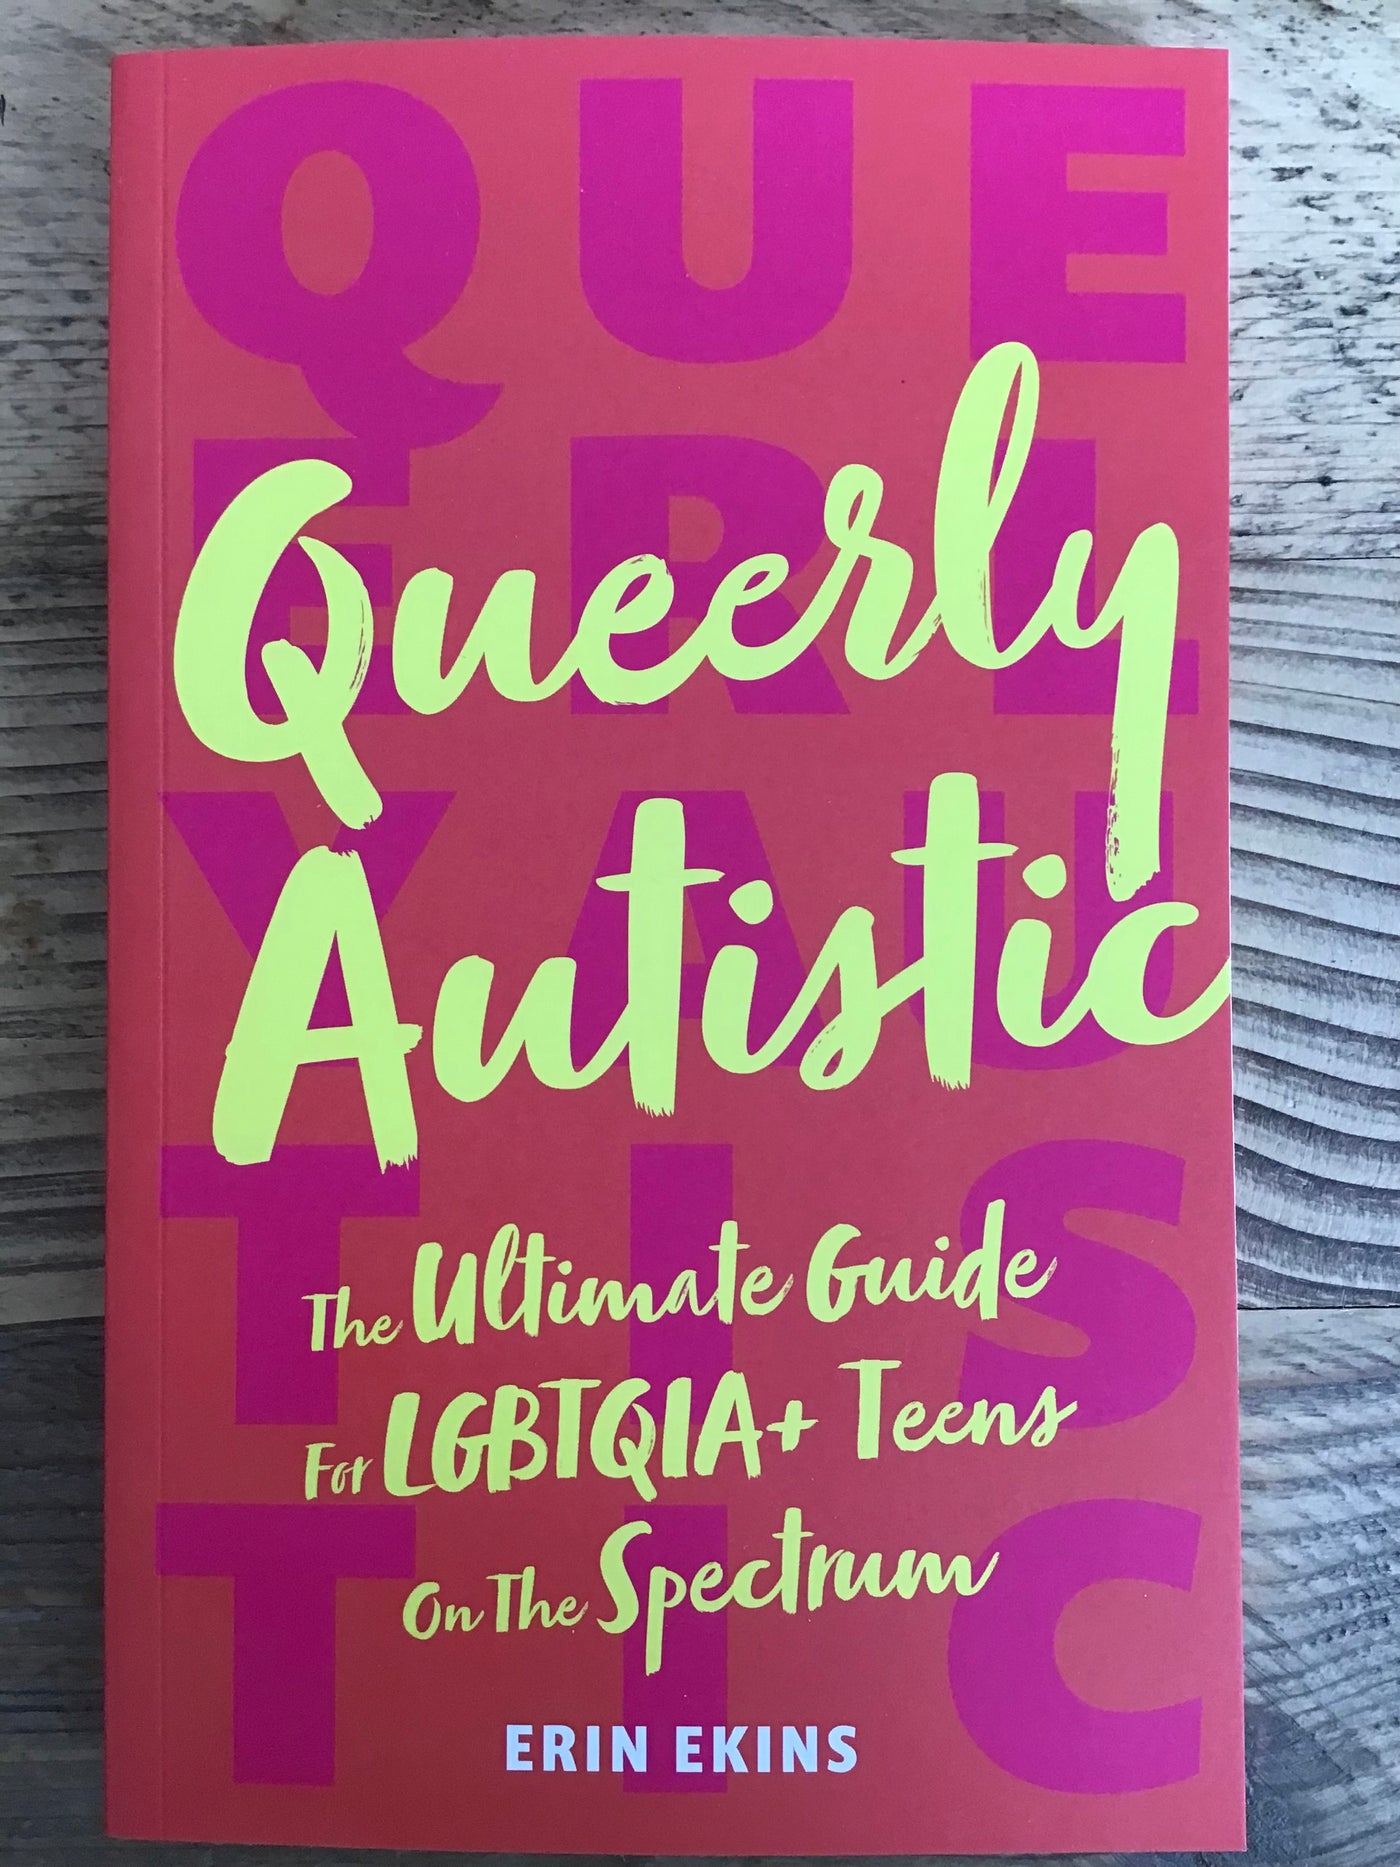 Queerly Autistic